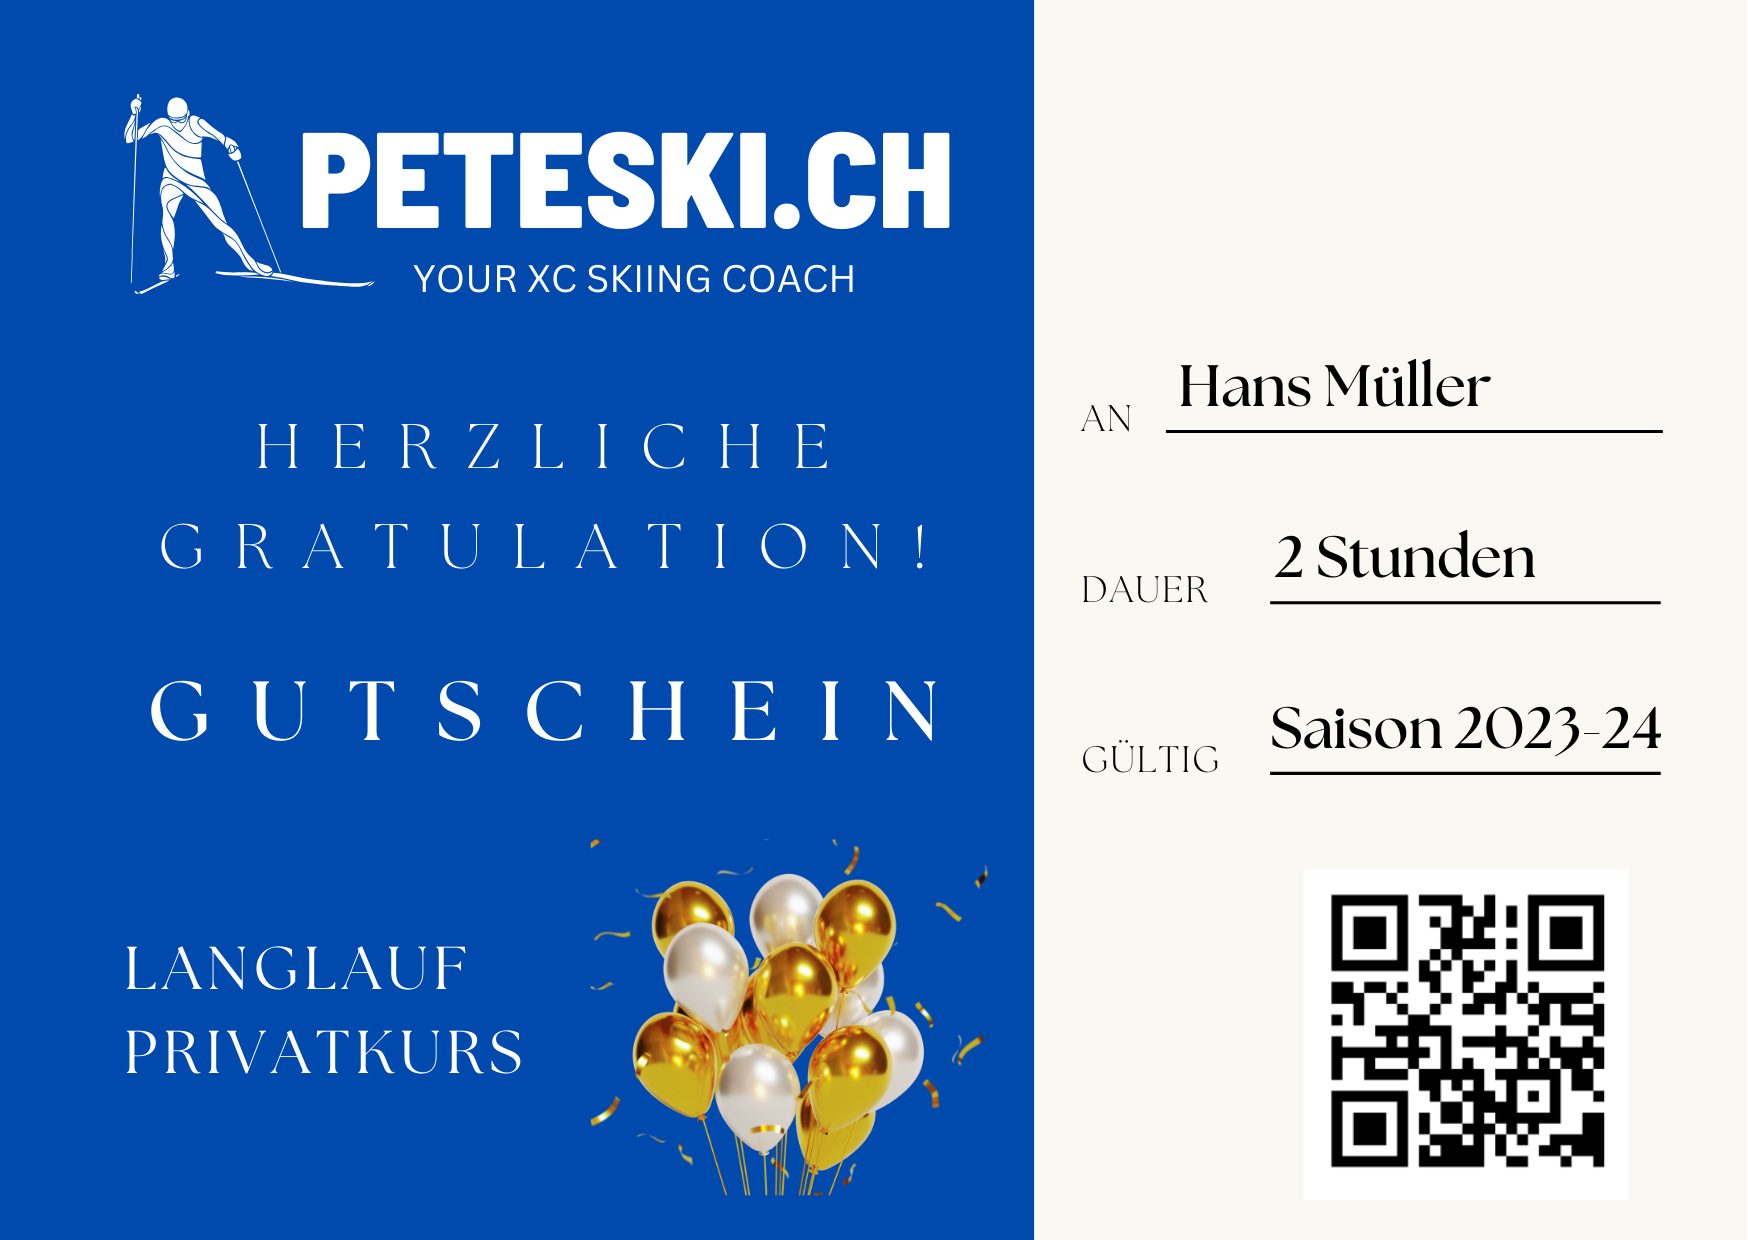 peteski.ch, Langlauf Privatkurse, Langlauf Coaching, Gutschein, Gift Card, Geschenkidee 